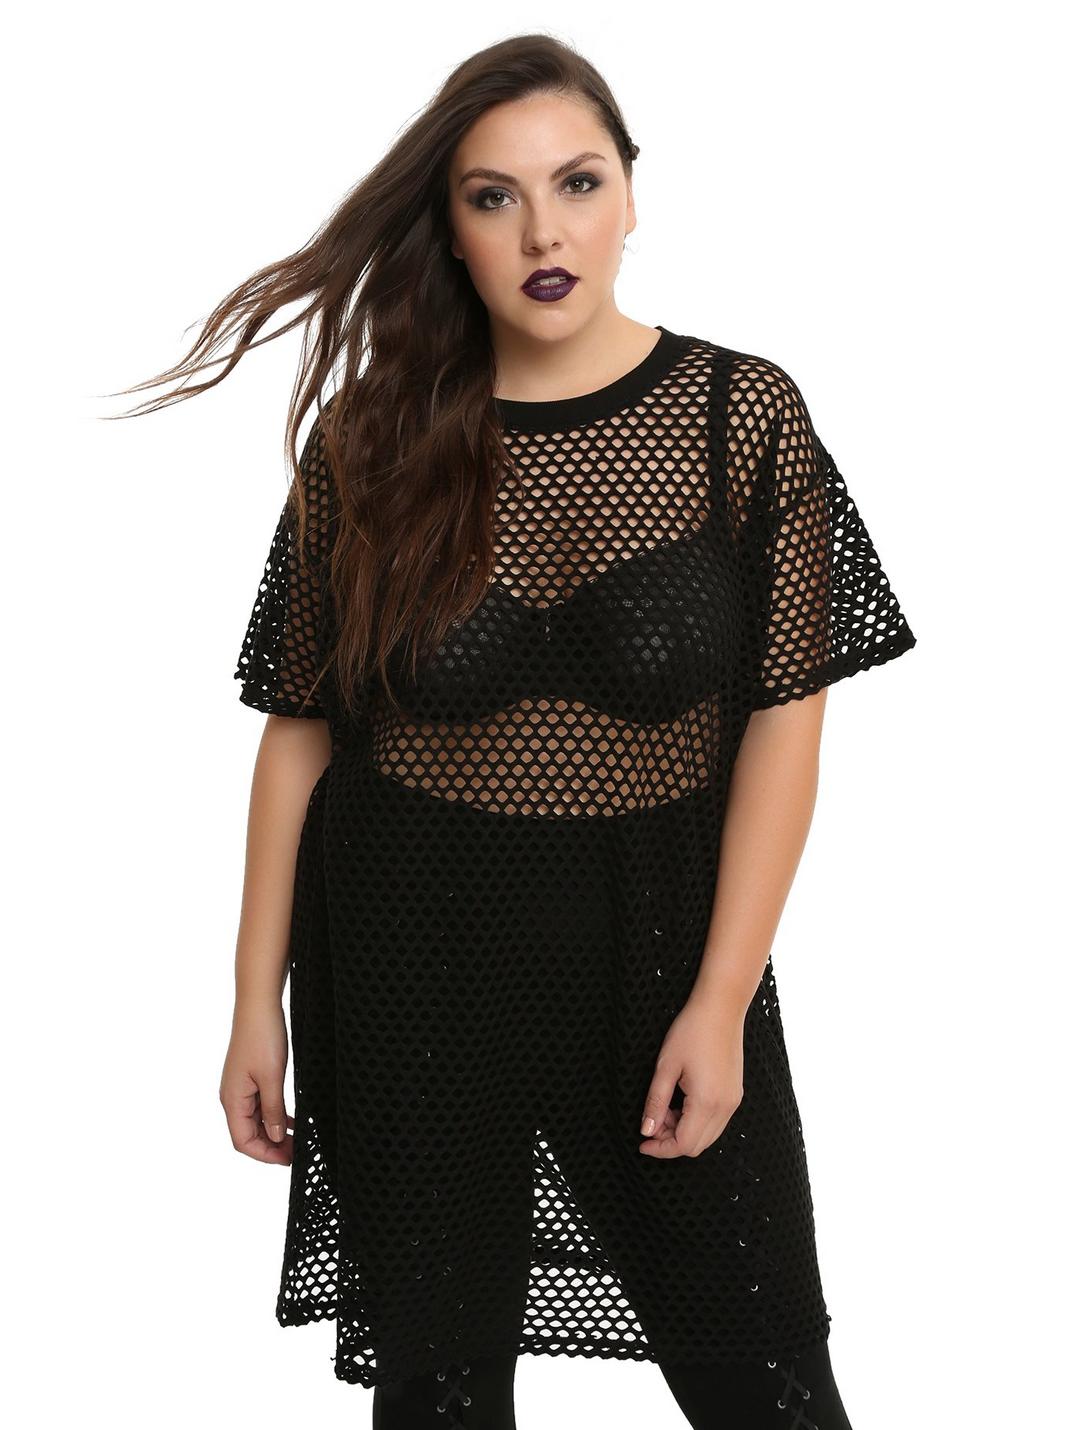 Black Fishnet Dress Plus Size, BLACK, hi-res